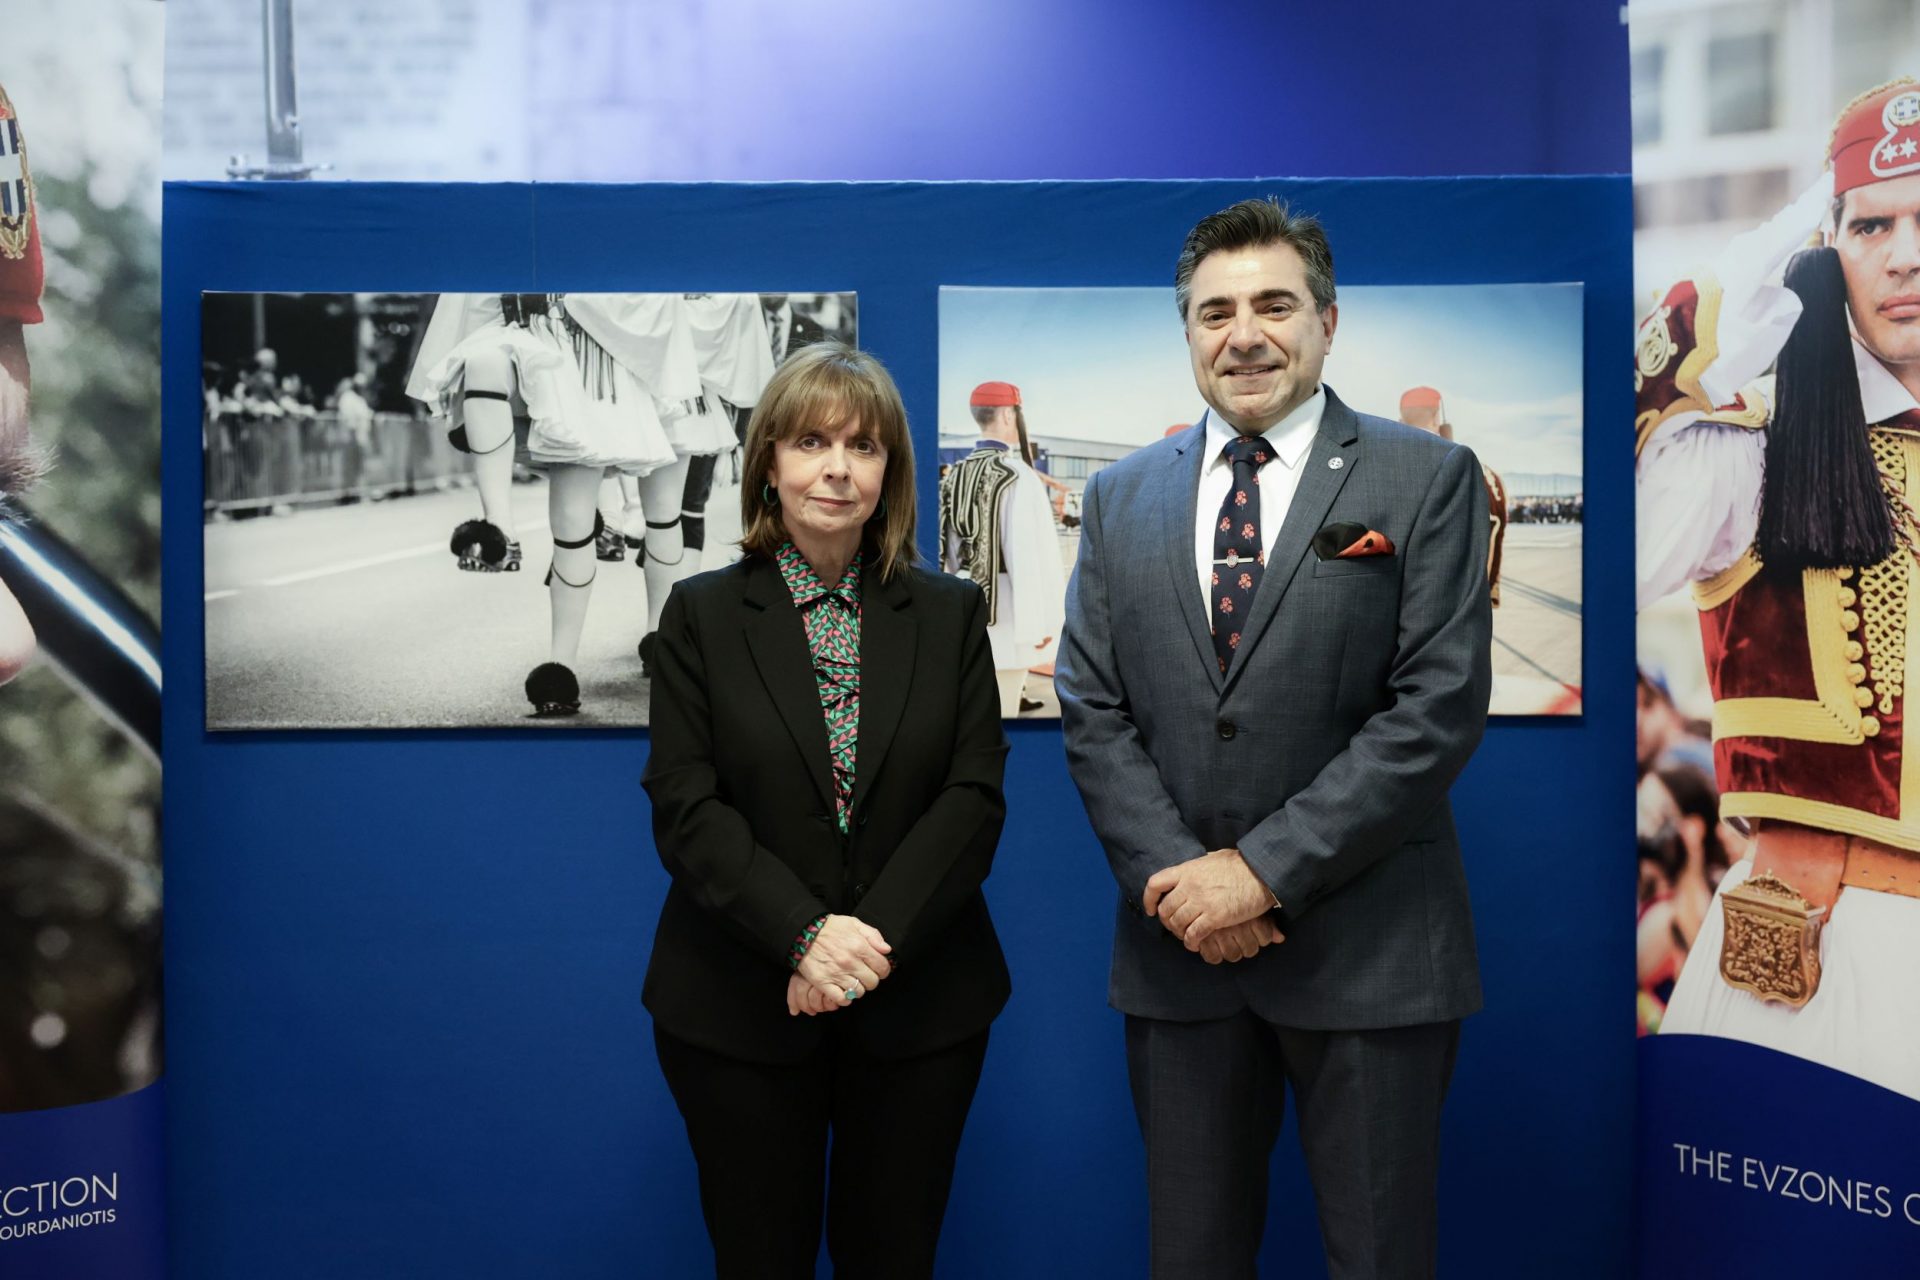 Ομογενής δωρίζει συλλογή φωτογραφιών των Ευζώνων στην Προεδρία της Ελληνικής Δημοκρατίας